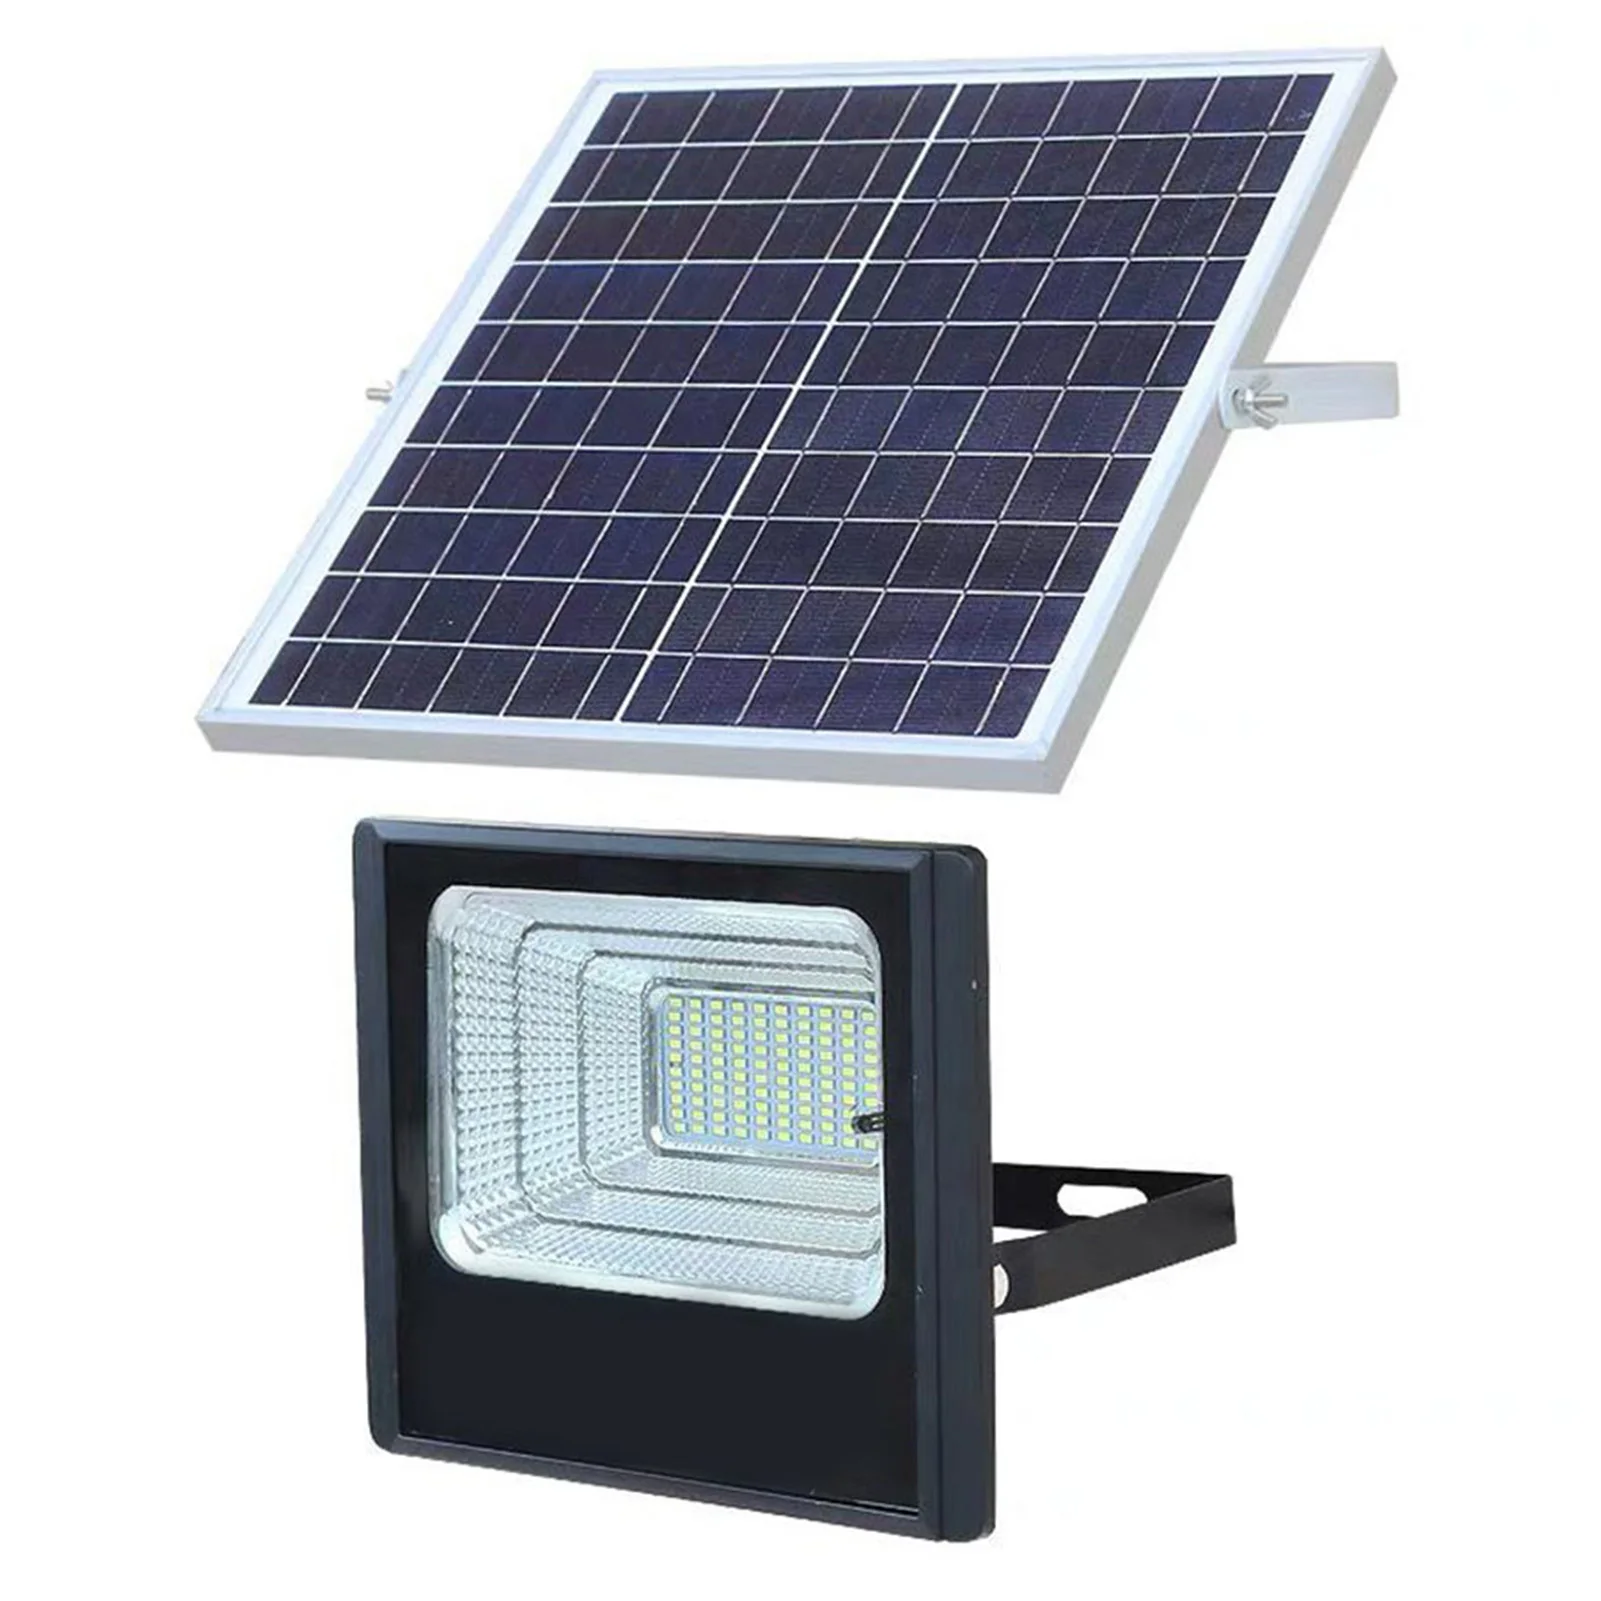 Светодиодная водонепроницаемая солнечная лампа с датчиком движения, наружный настенный светильник для парковки и коридора